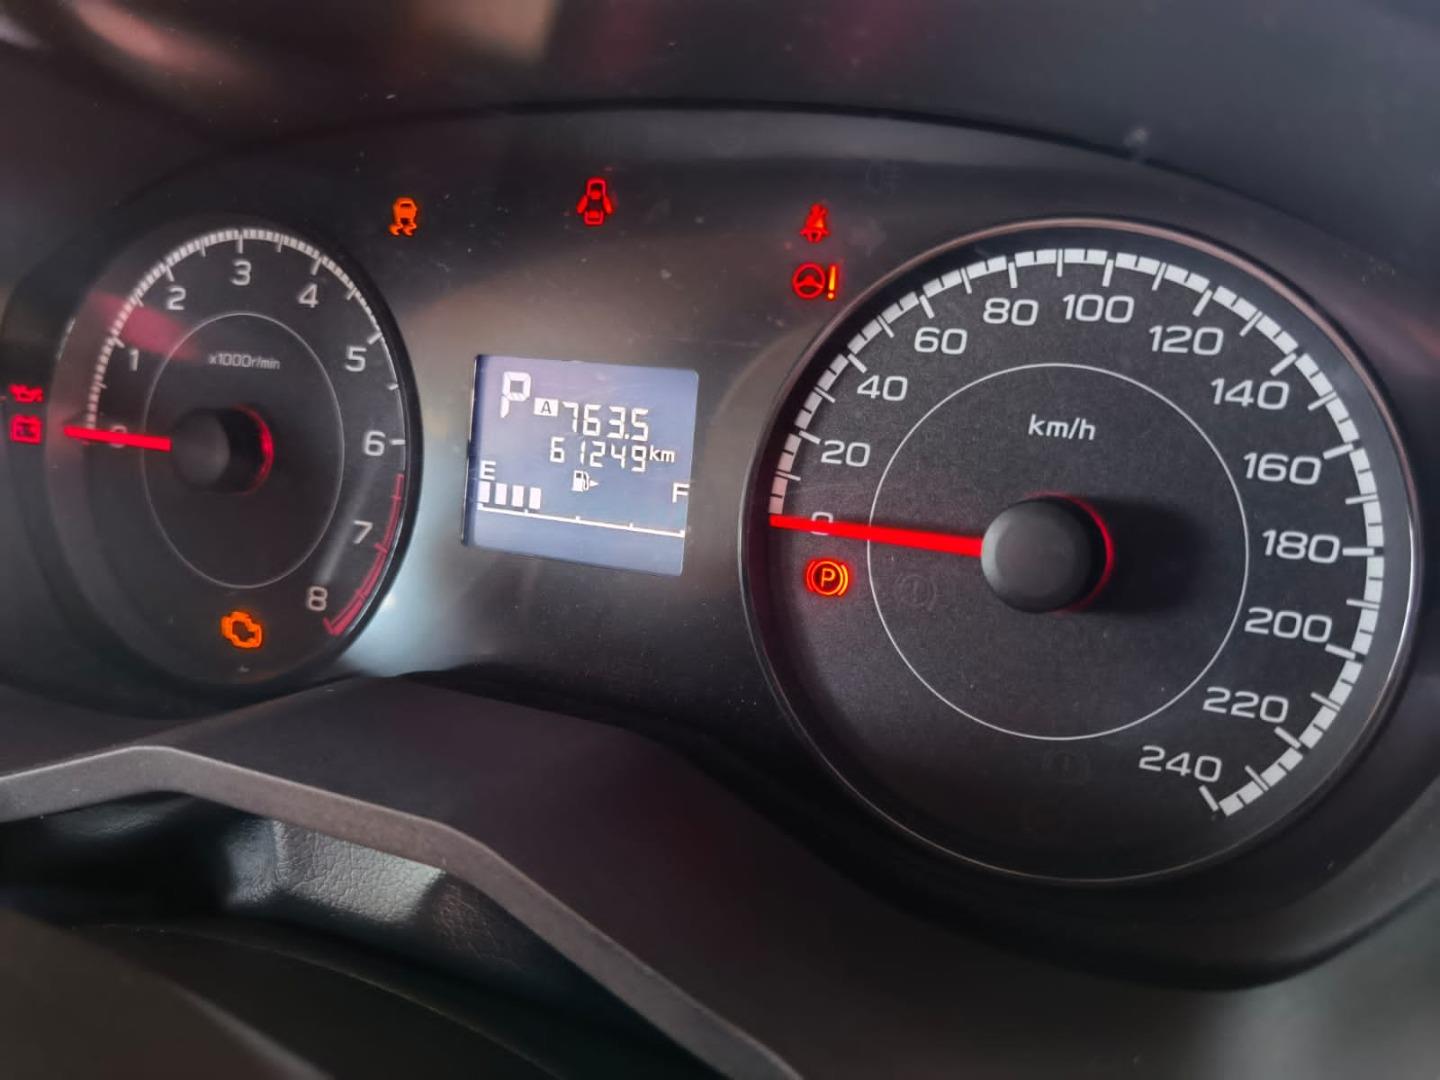 2019 Subaru Impreza cluster meter 